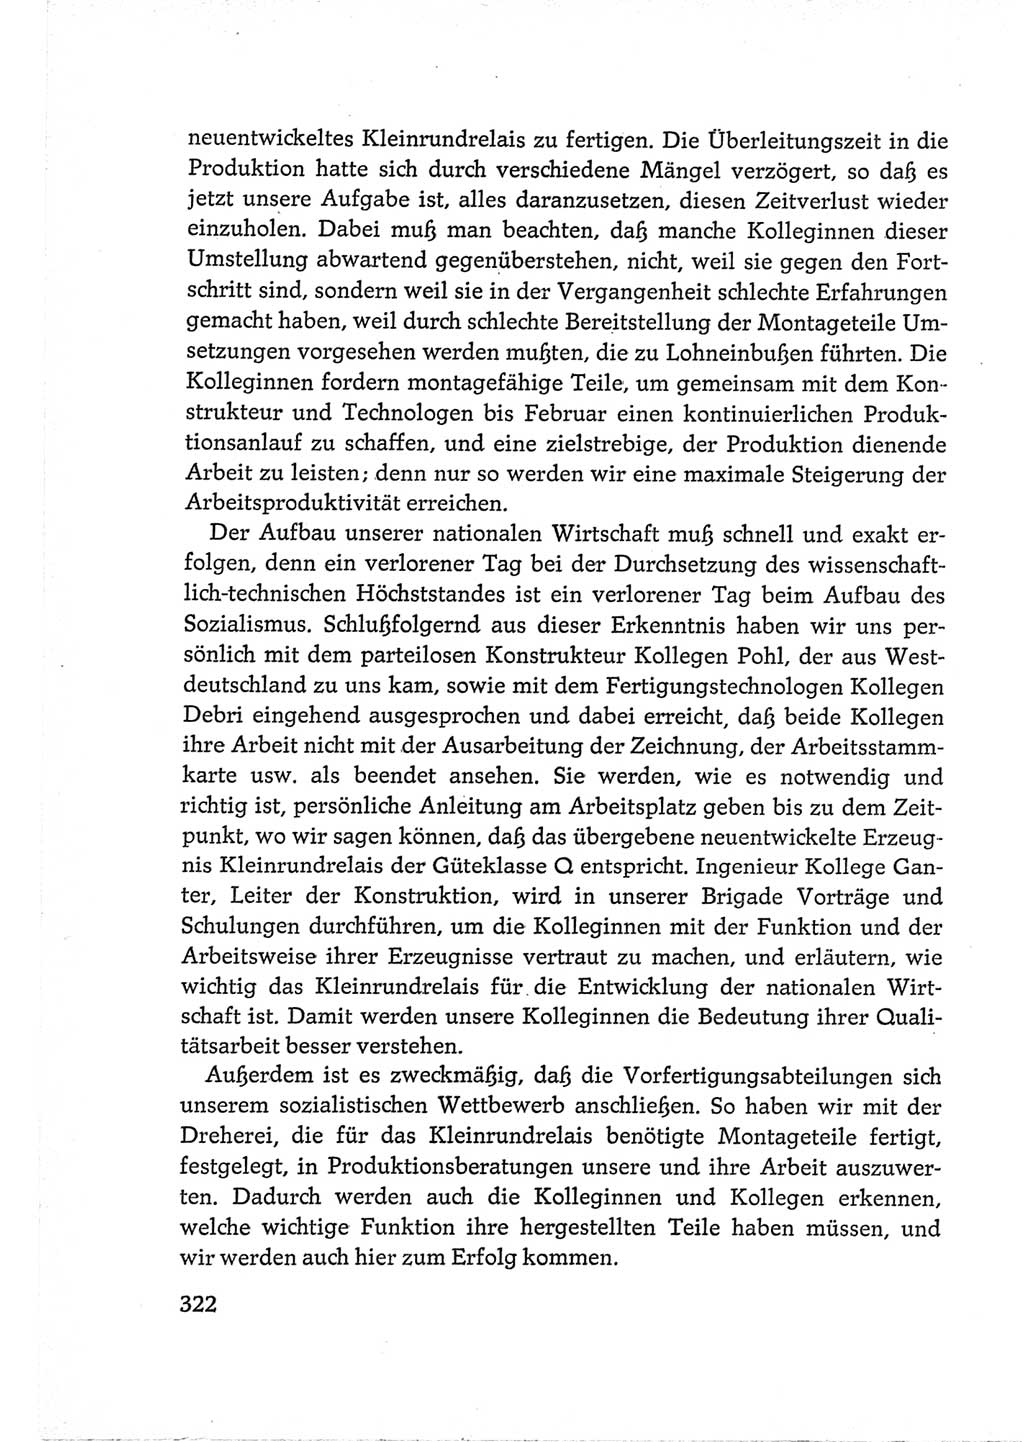 Protokoll der Verhandlungen des Ⅵ. Parteitages der Sozialistischen Einheitspartei Deutschlands (SED) [Deutsche Demokratische Republik (DDR)] 1963, Band Ⅲ, Seite 322 (Prot. Verh. Ⅵ. PT SED DDR 1963, Bd. Ⅲ, S. 322)